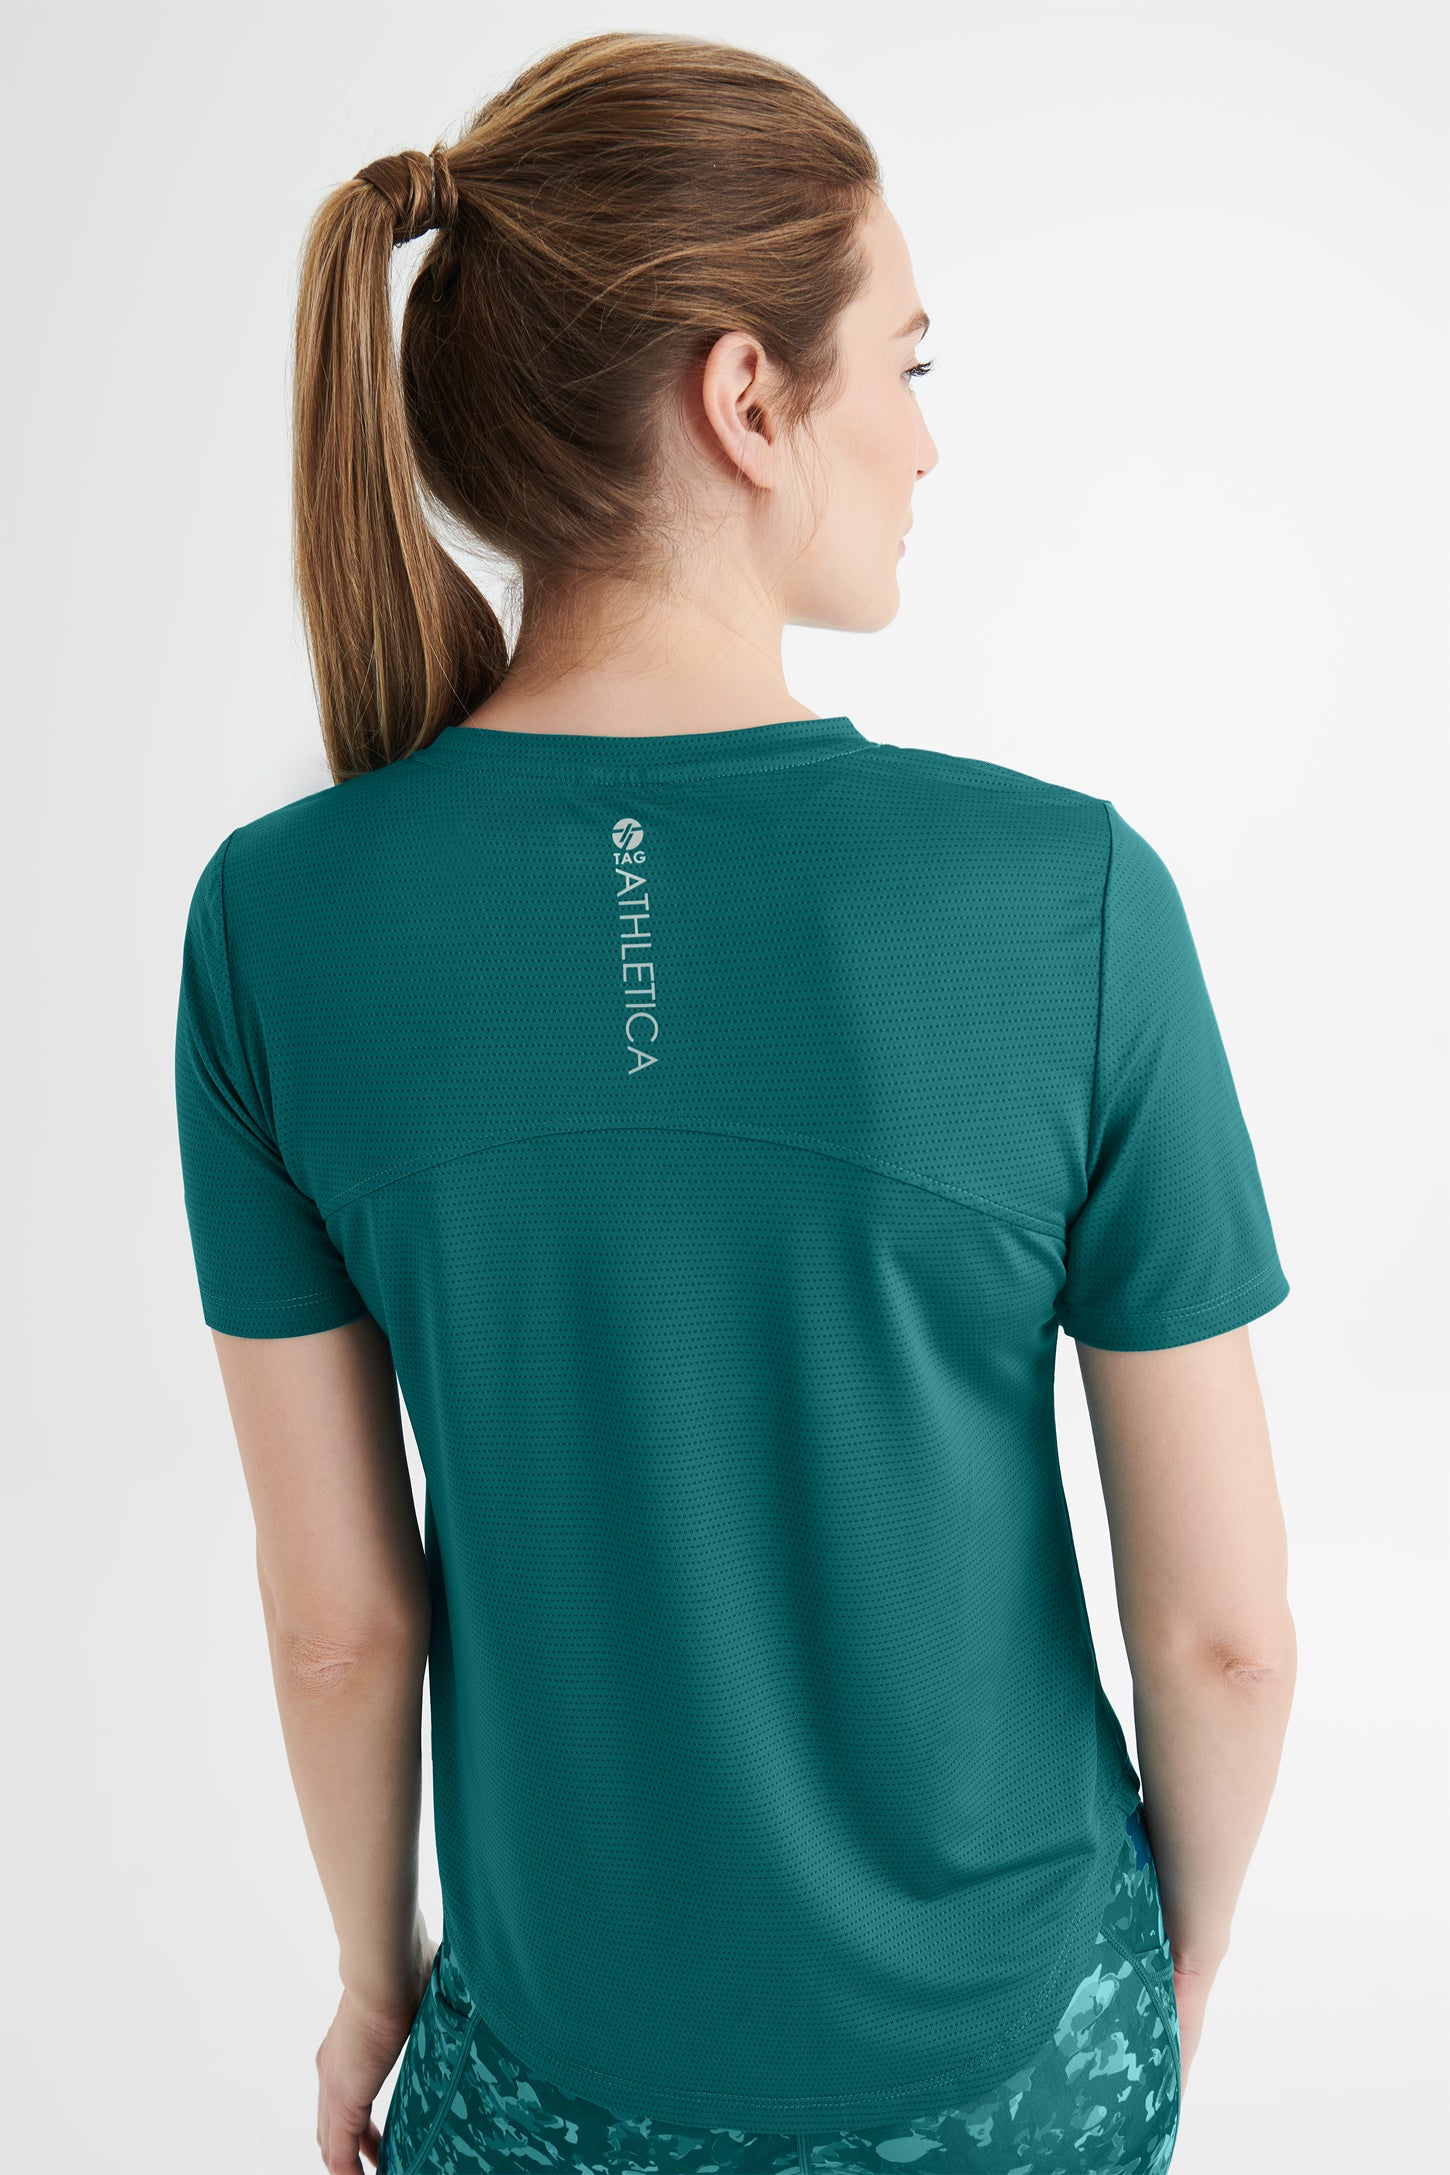 T-shirt athlétique - Femme && TURQUOISE